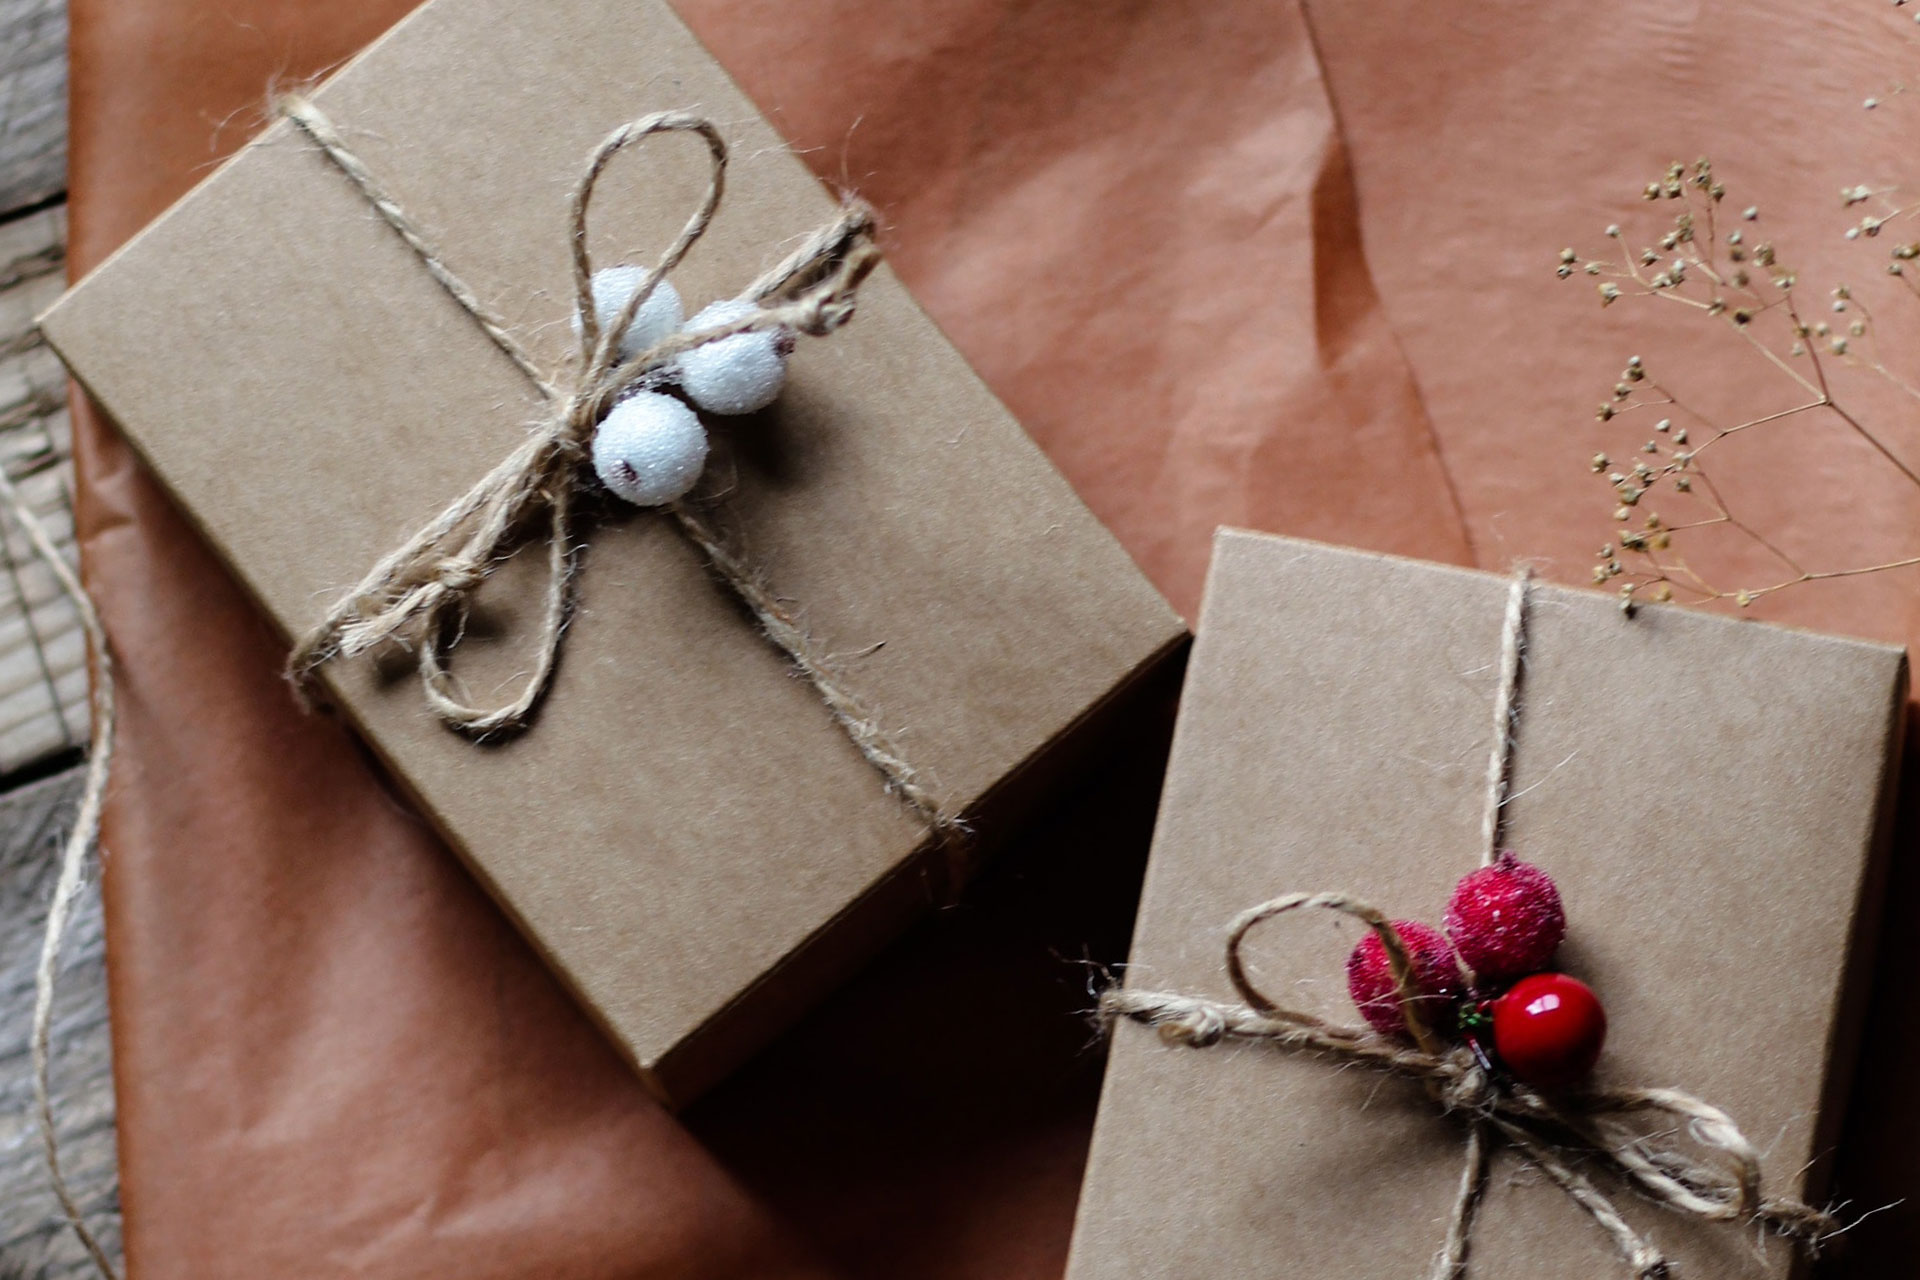 Zwei eingepackte Geschenke liegen auf einem altrosa-farbenen Geschenkpapier. Fotocredits: Olga Safronova, unsplash